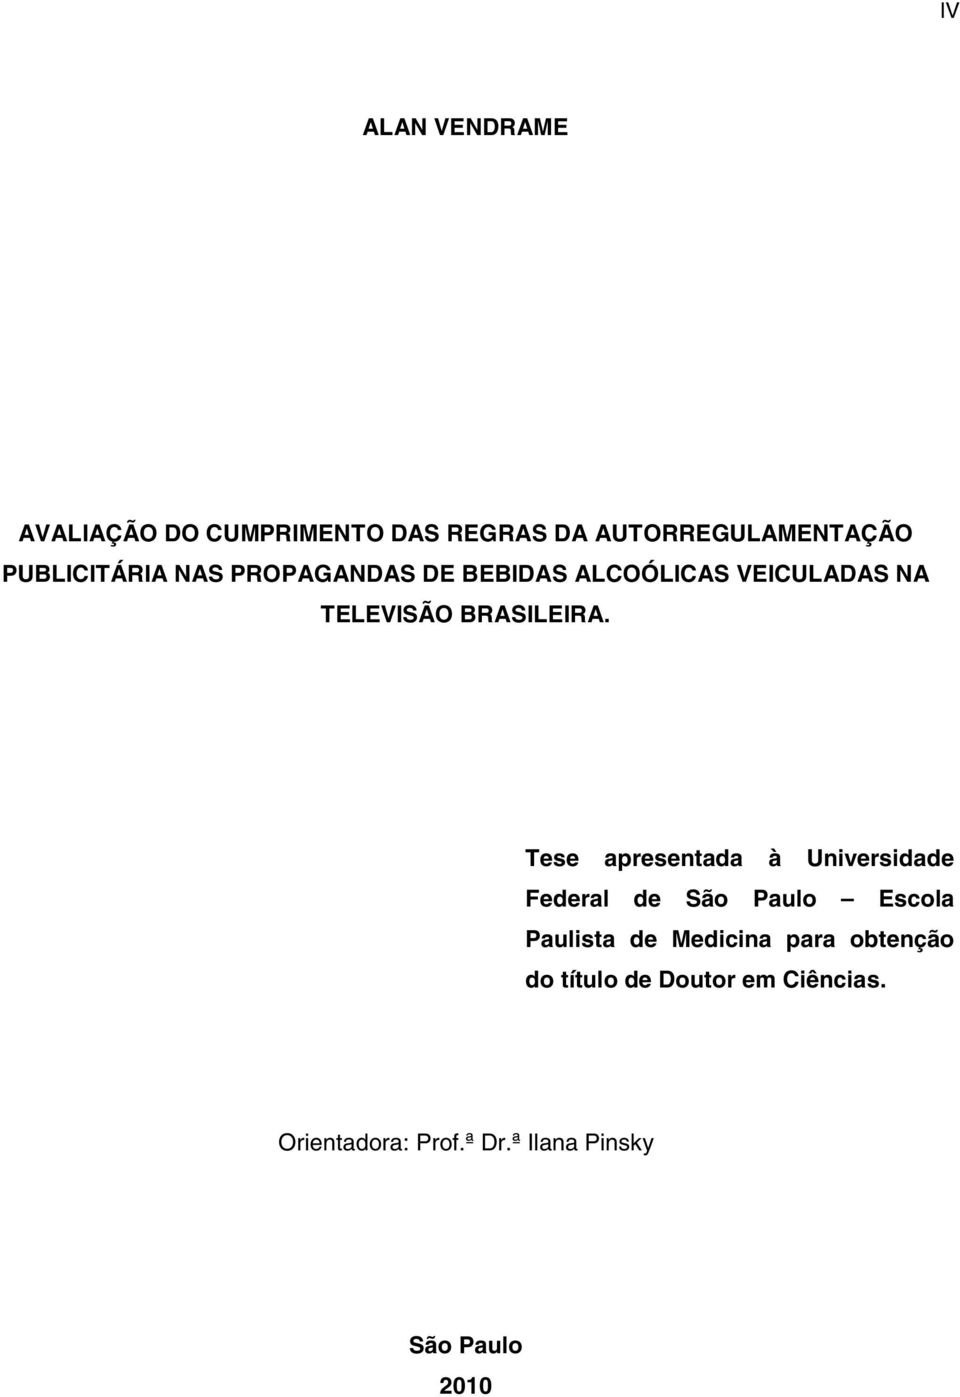 Tese apresentada à Universidade Federal de São Paulo Escola Paulista de Medicina para